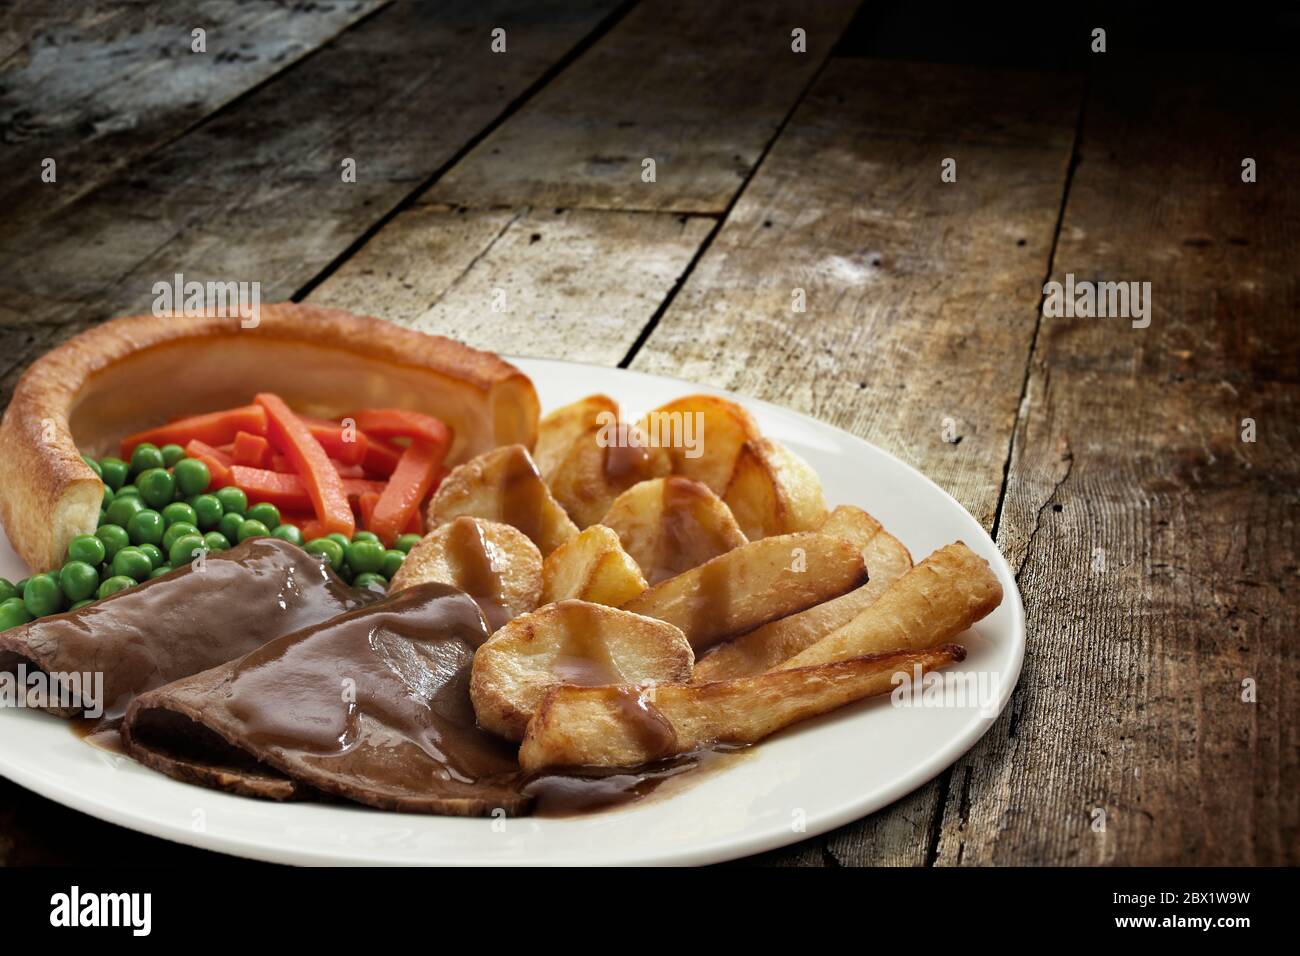 Cena tradicional asado los domingos con rosbif, pudín de yorkshire y verduras servidas en un plato sobre mesa de madera Foto de stock